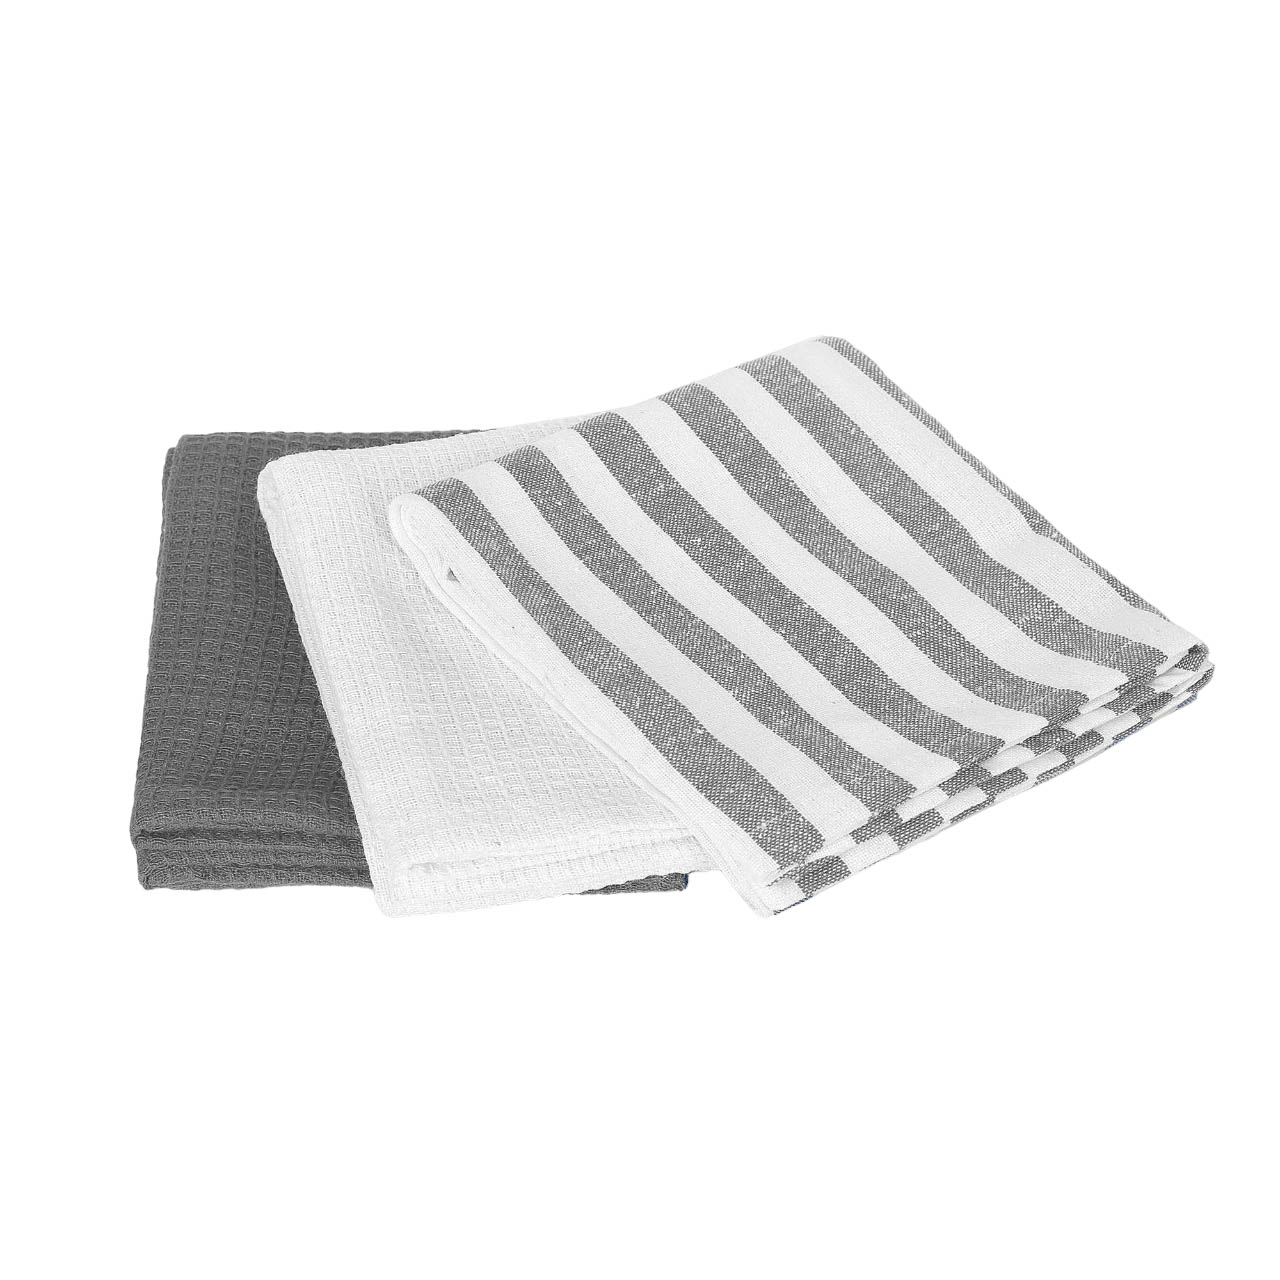 Полотенца Homelines textiles 45x65 см xлопковые бело-серые 3 шт